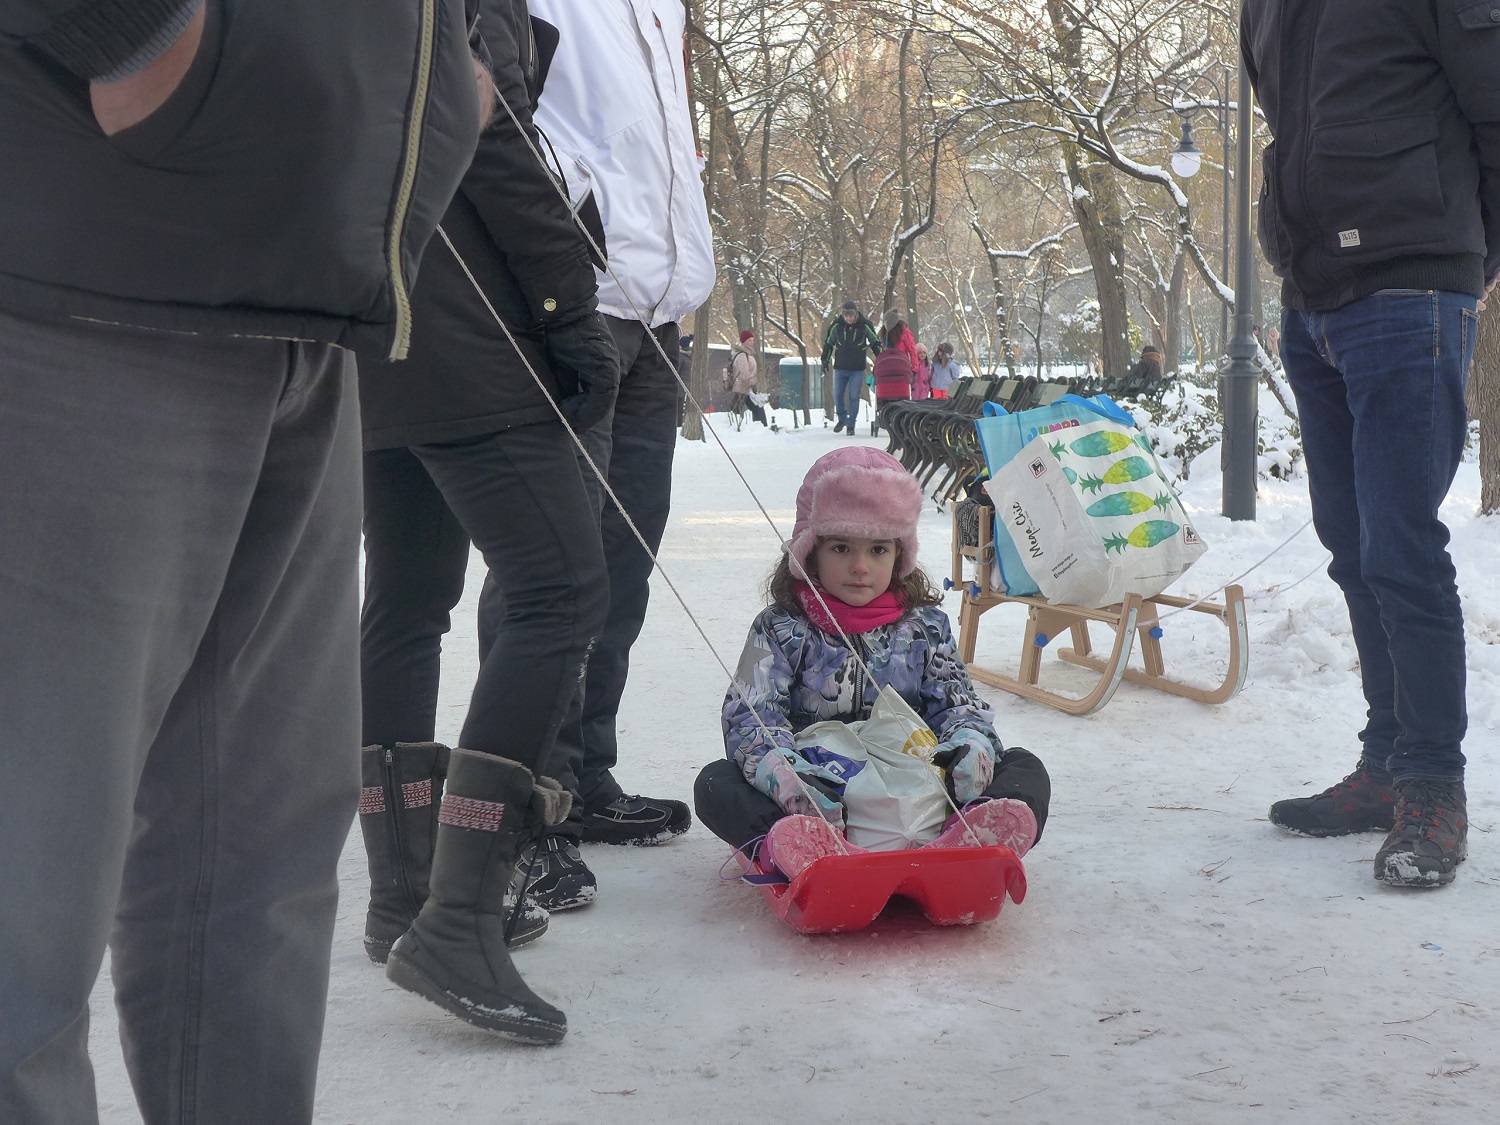 Beaucoup d’enfants sortent les luges, comme ici dans le parc Cismigiu